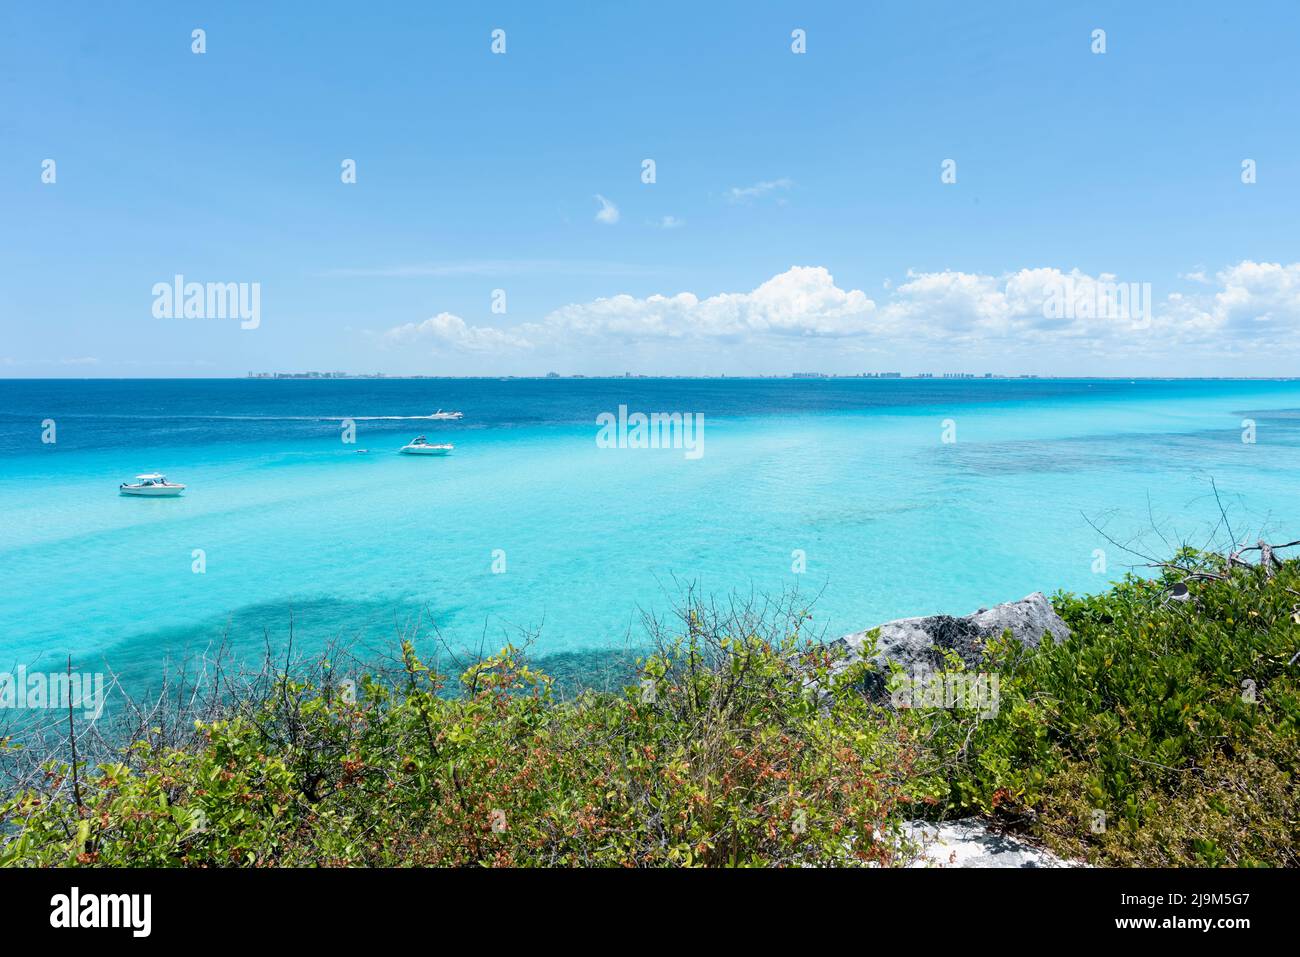 Vista aérea de la costa y el Mar Caribe del extremo sur de Isla Mujeres en México Foto de stock